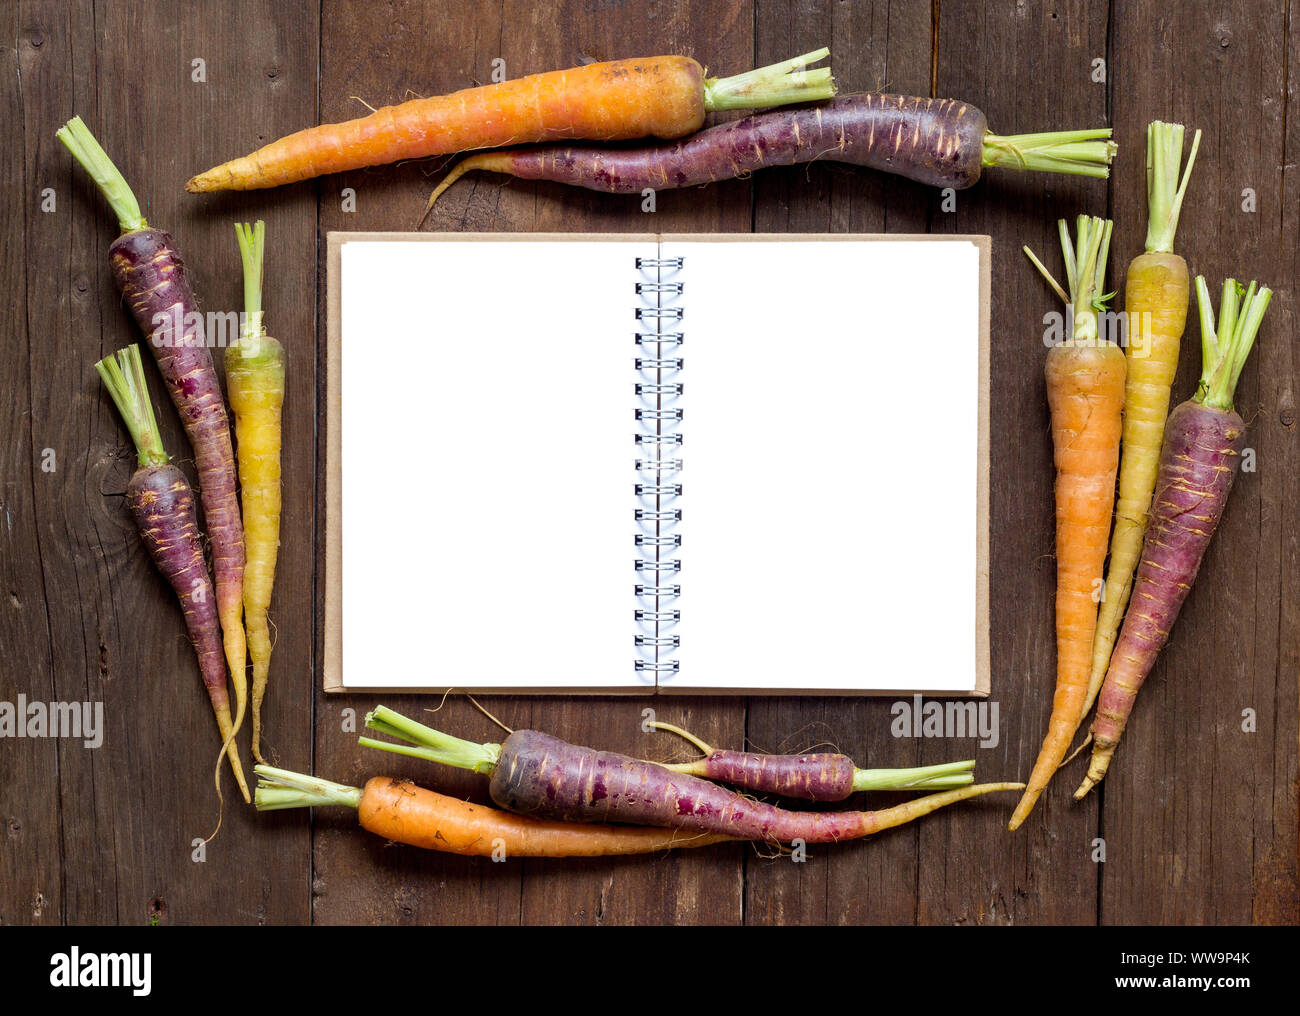 Fresche biologiche rainbow carote con ricette libro su un tavolo di legno Foto Stock